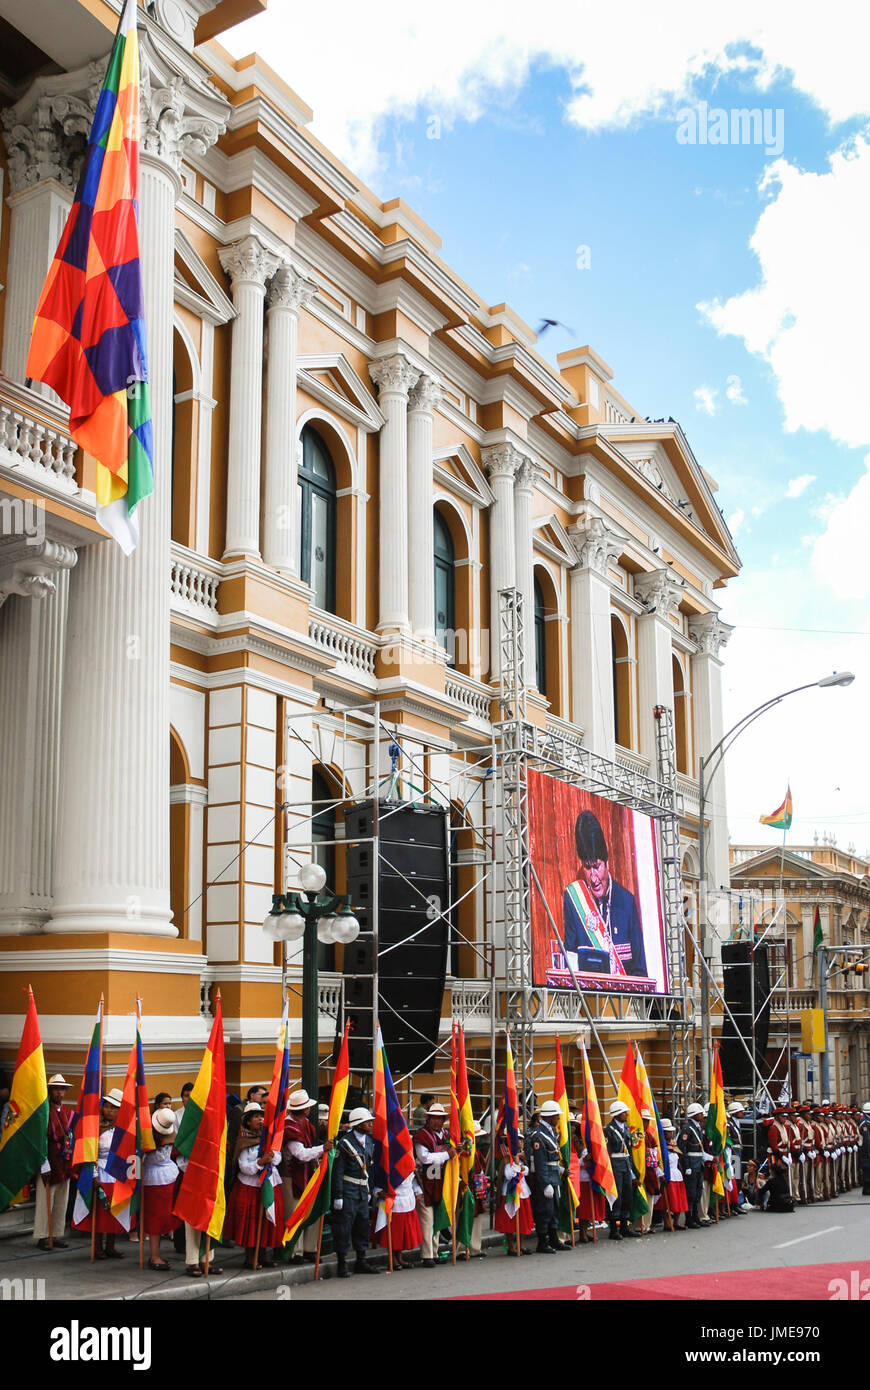 Evo Morales, Präsident von Bolivien, ist in einem großen Bildschirm gesehen, als er eine Rede bei der Feier der Gründungstag Plurinationaler Staat gibt, Stockfoto